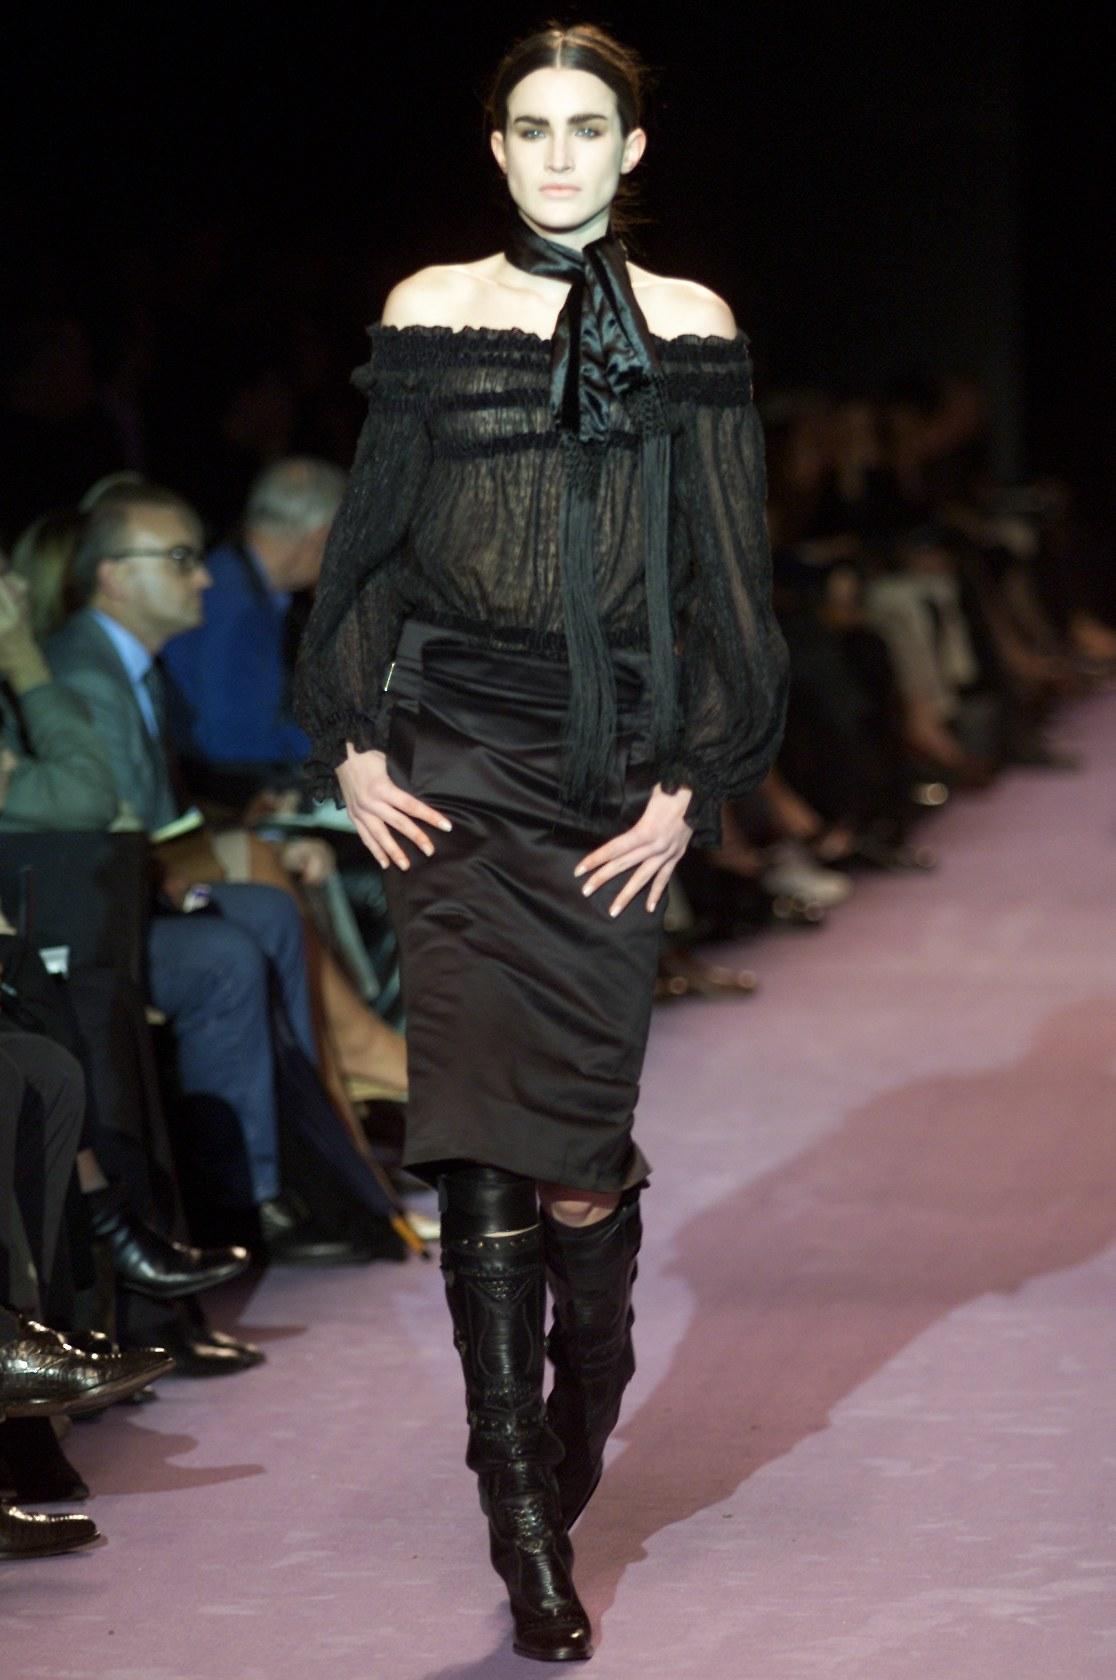 Tom Ford for Yves Saint Laurent Runway Black Sheer Top Blouse
Collection F/W 2001
Style décolleté, tissu diaphane semblable à des plumes de soie, bordure en velours noir.
L'étiquette de taille est coupée - Veuillez vérifier les mesures.
Mesures : 